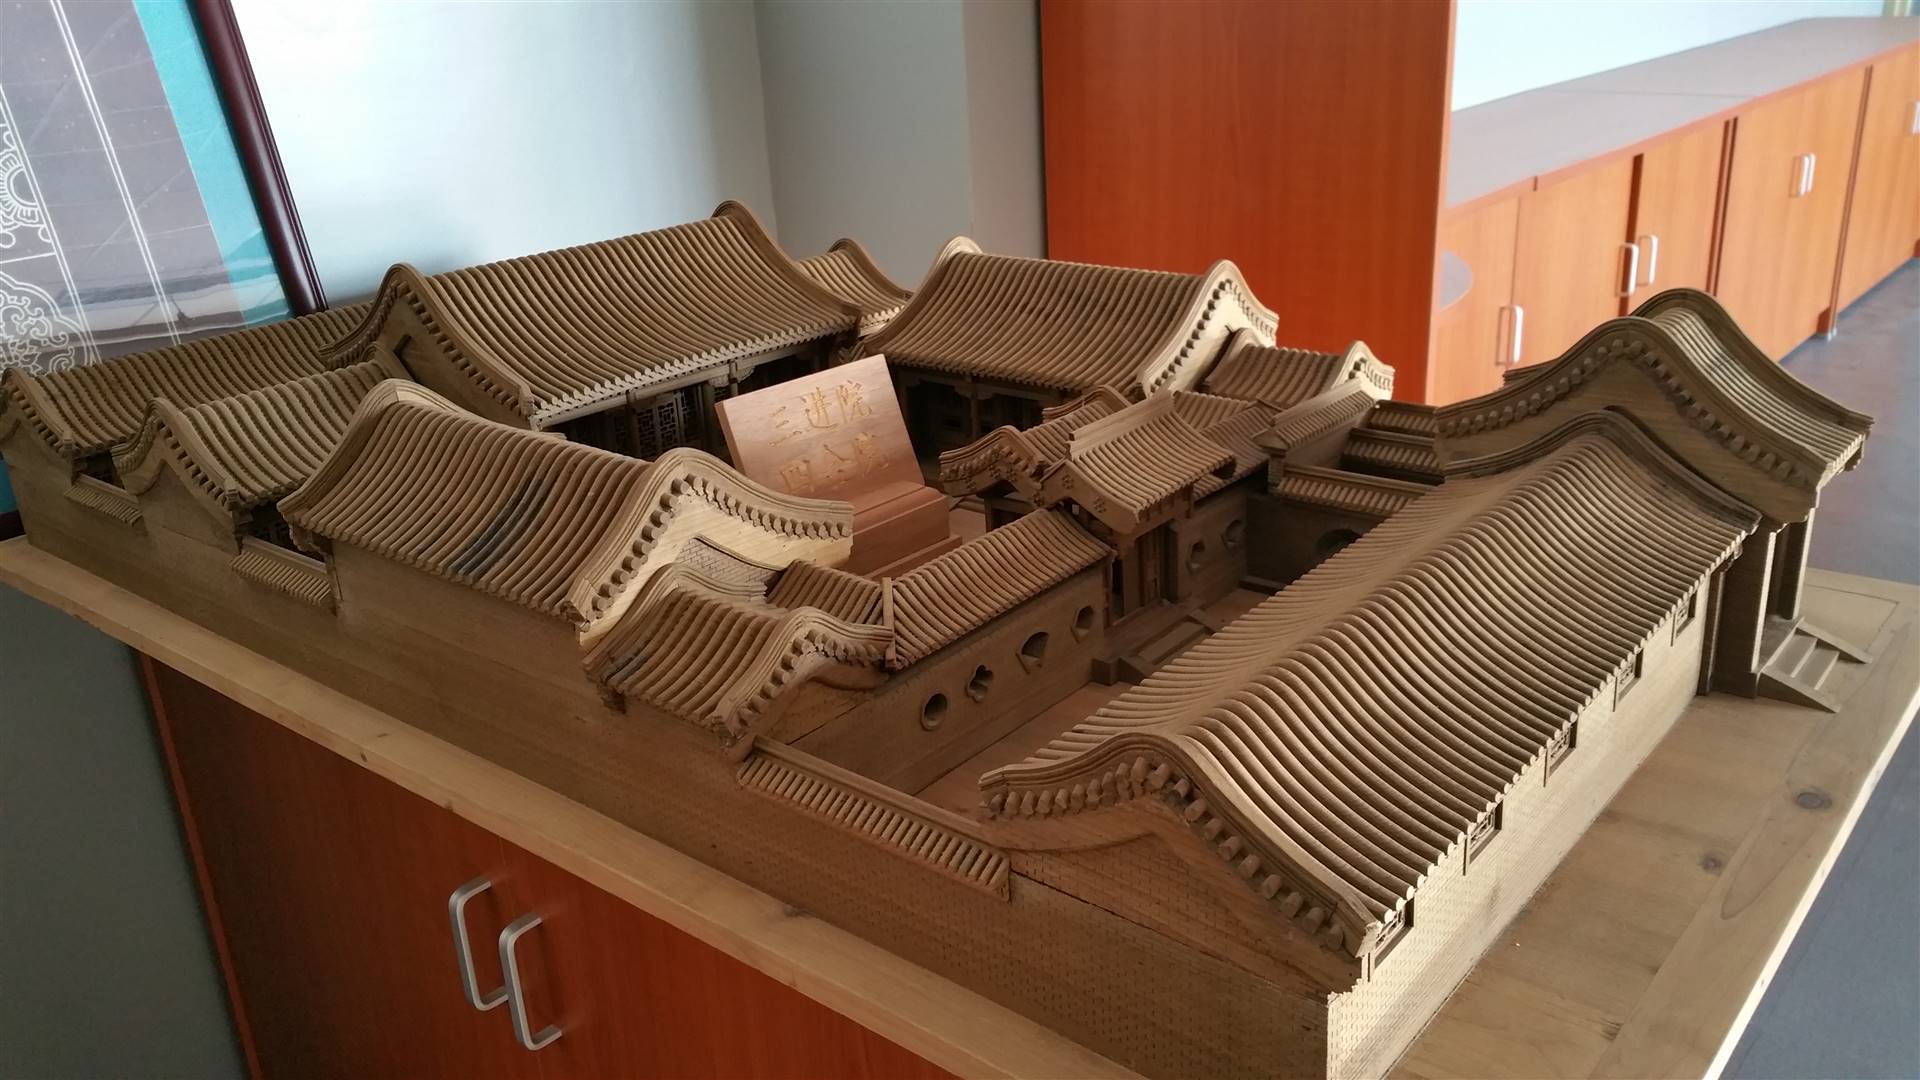 四合院模型木制模型仿古建筑模型